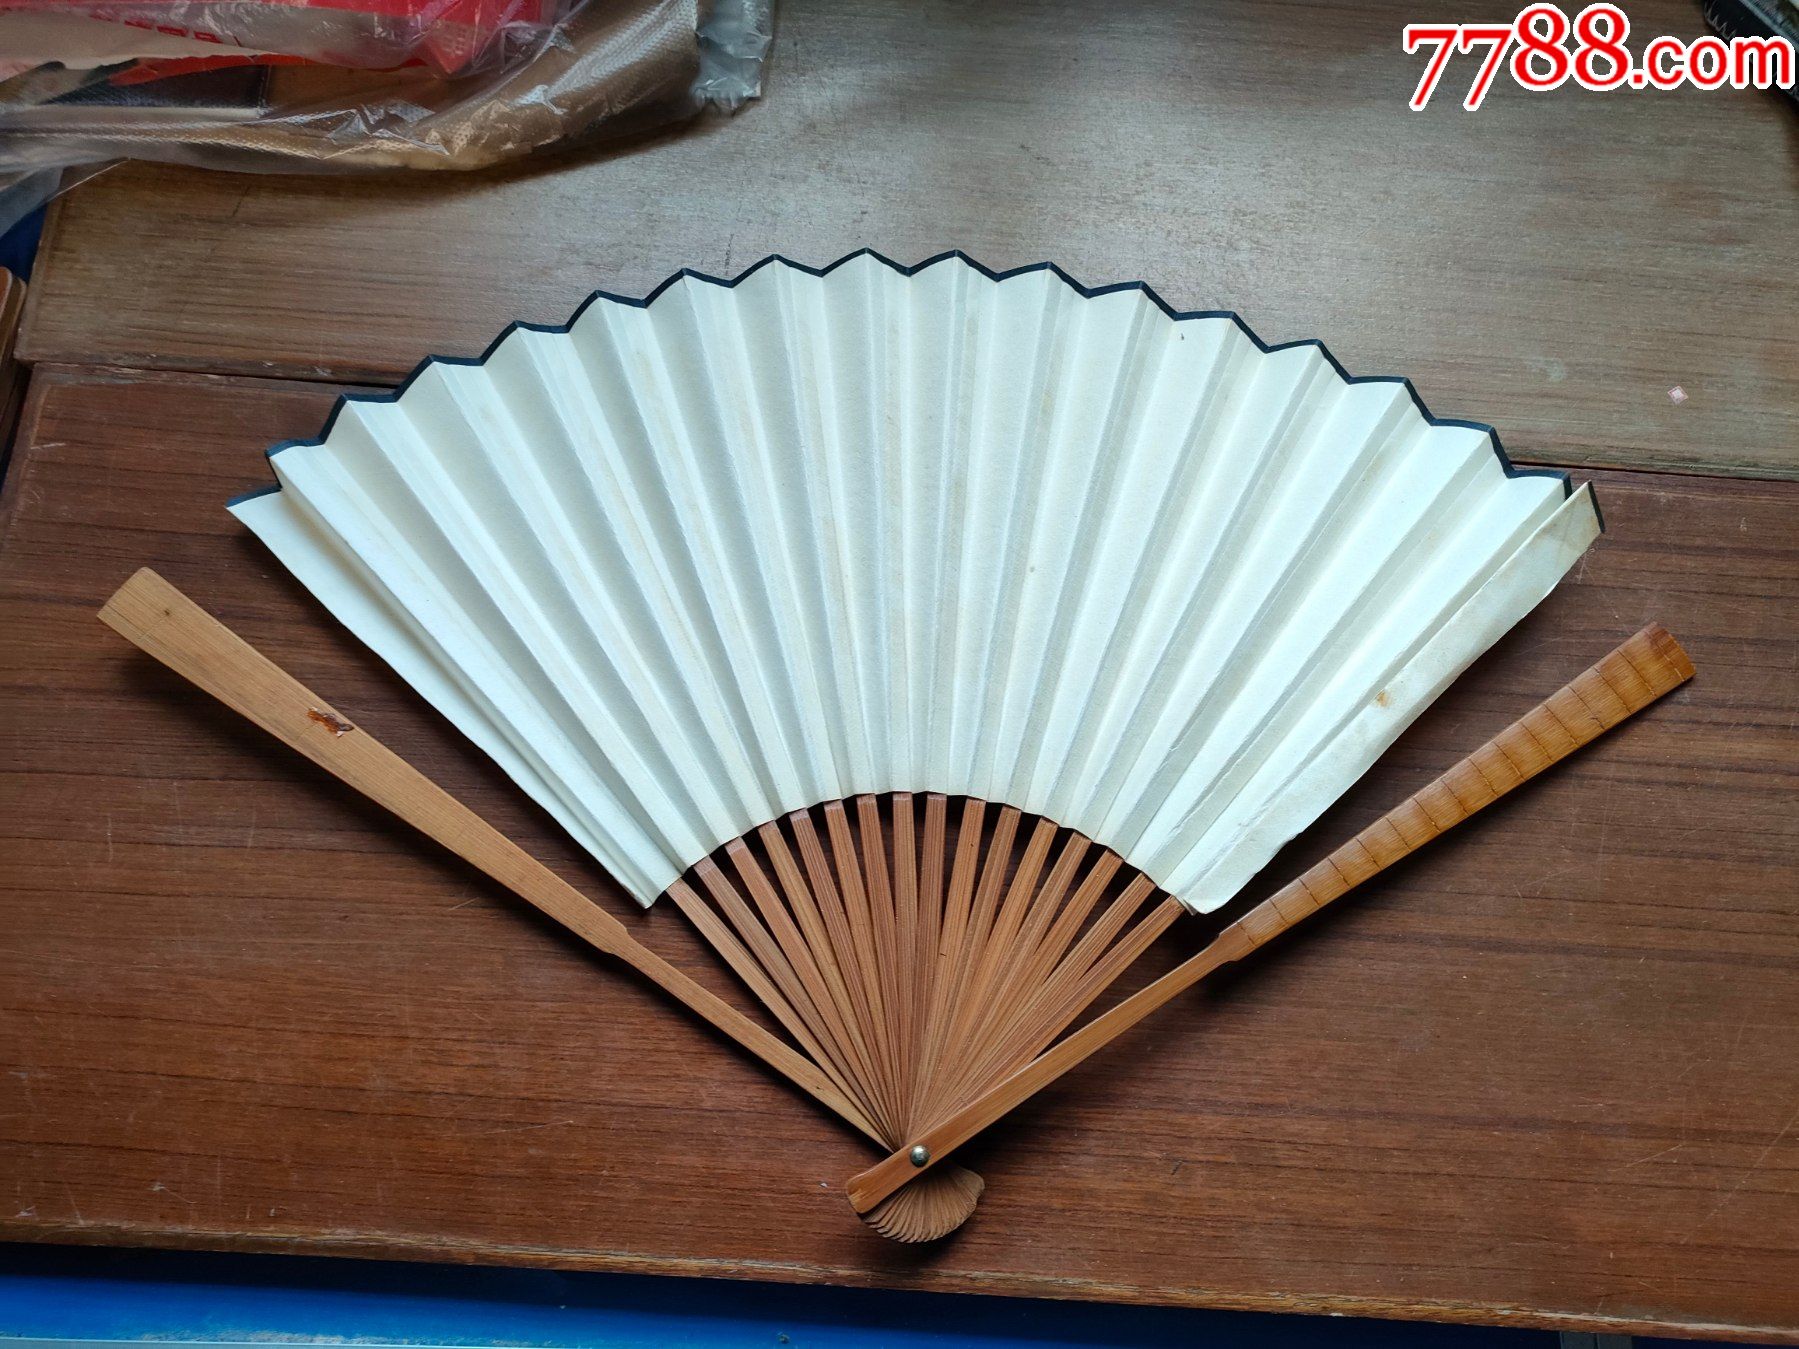 上海王星记扇庄(折扇长约30cm)